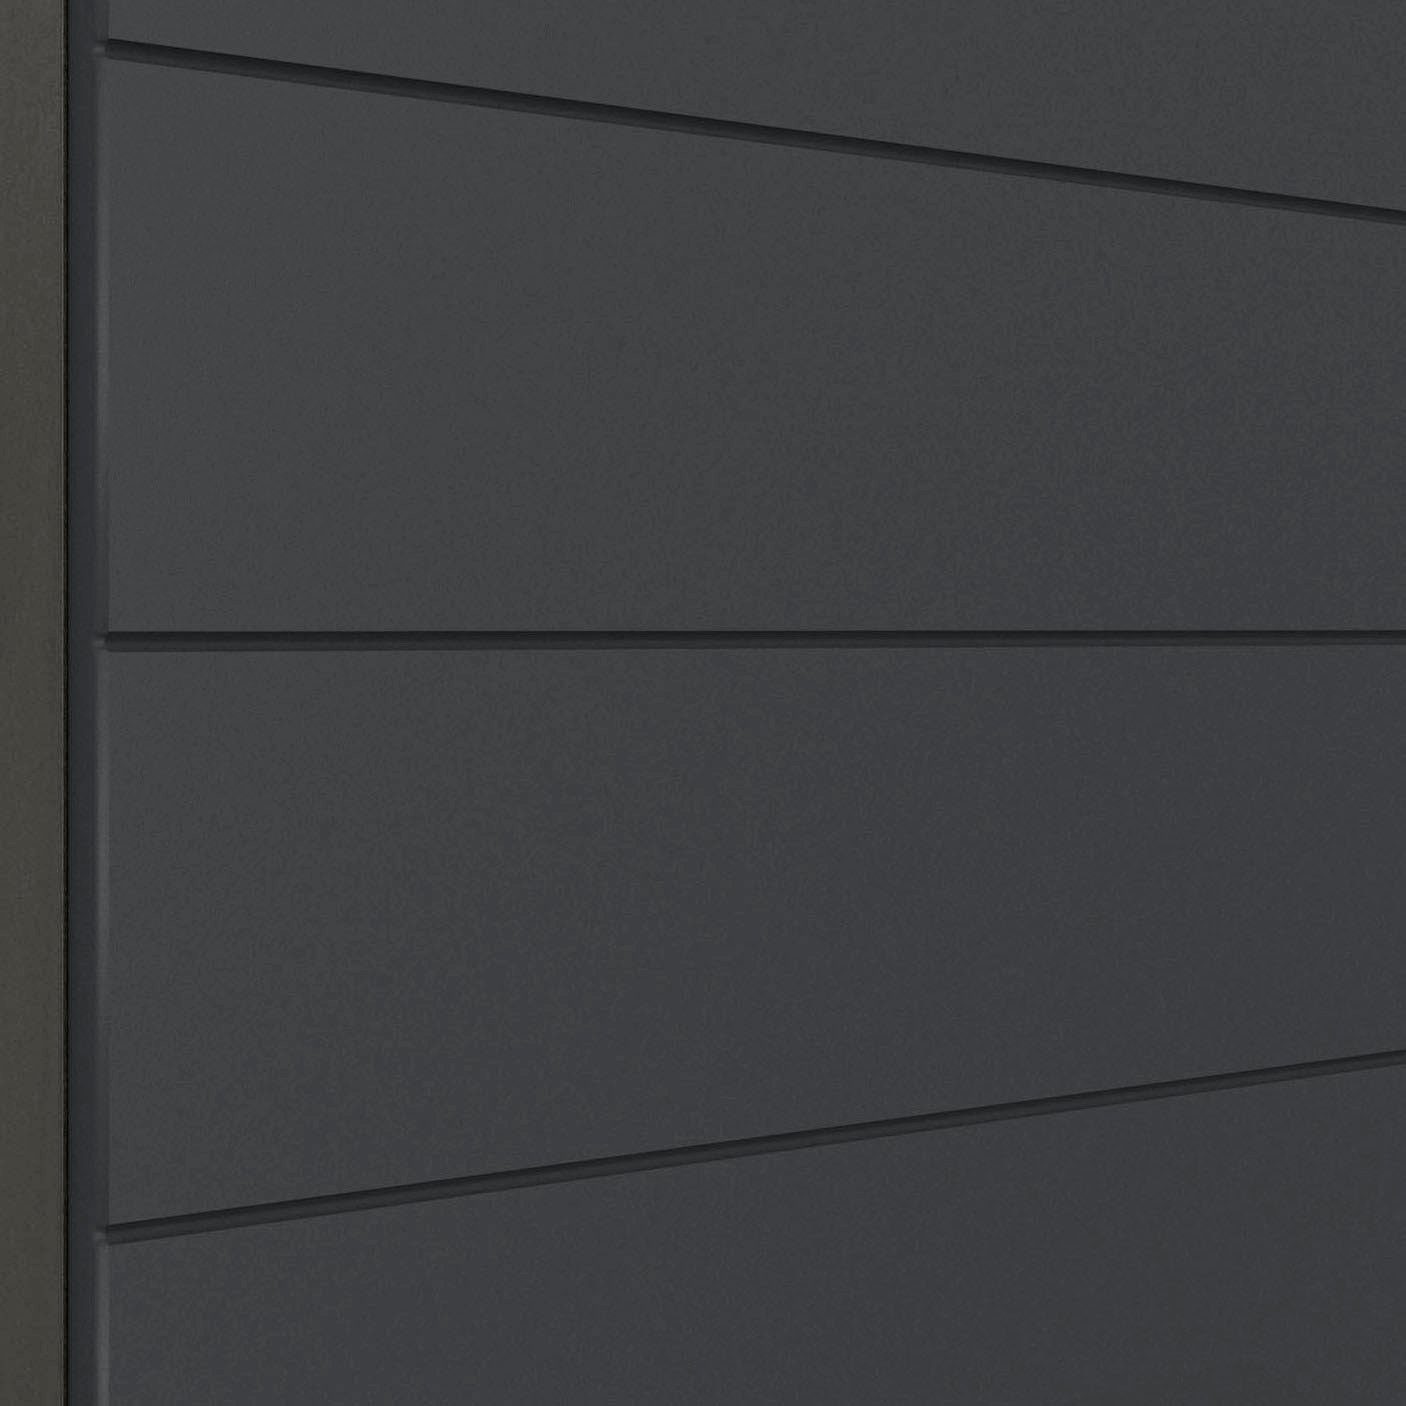 Luhe waagerechter MDF-Fronten 120 HELD graphit mit Spülenschrank Lisene Matt/grafit grau breit, cm | MÖBEL hochwertige